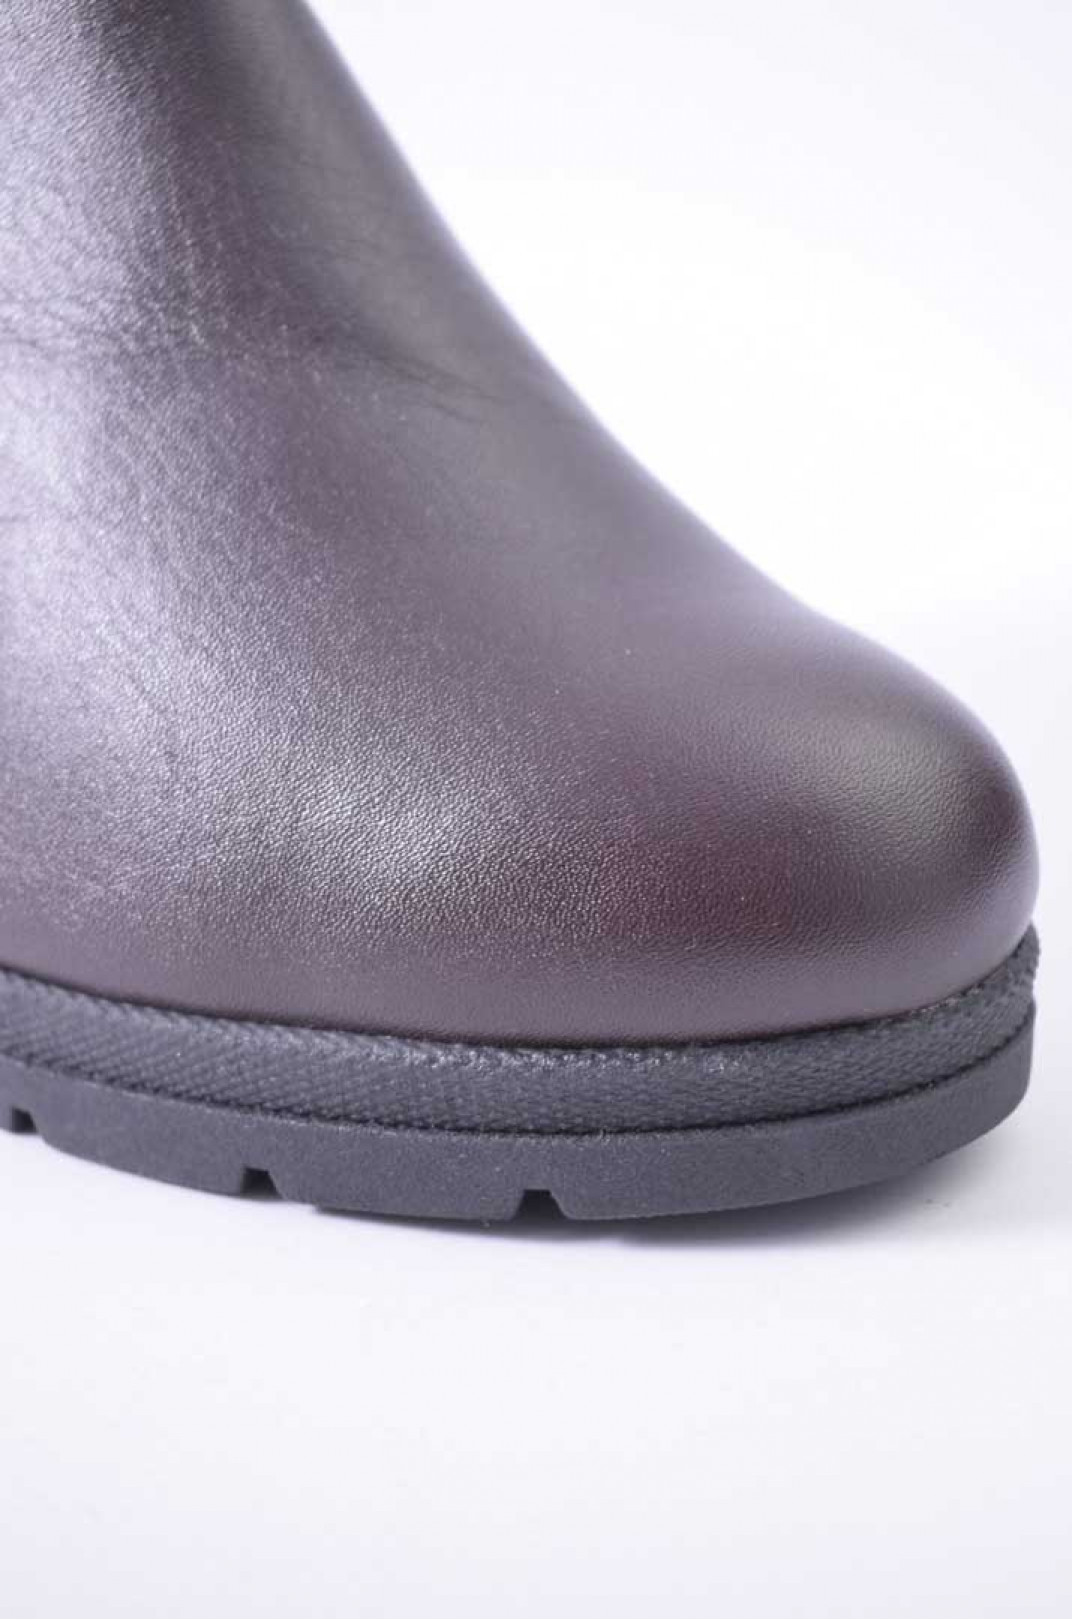 Ботинки зимние кожаные на каблуке